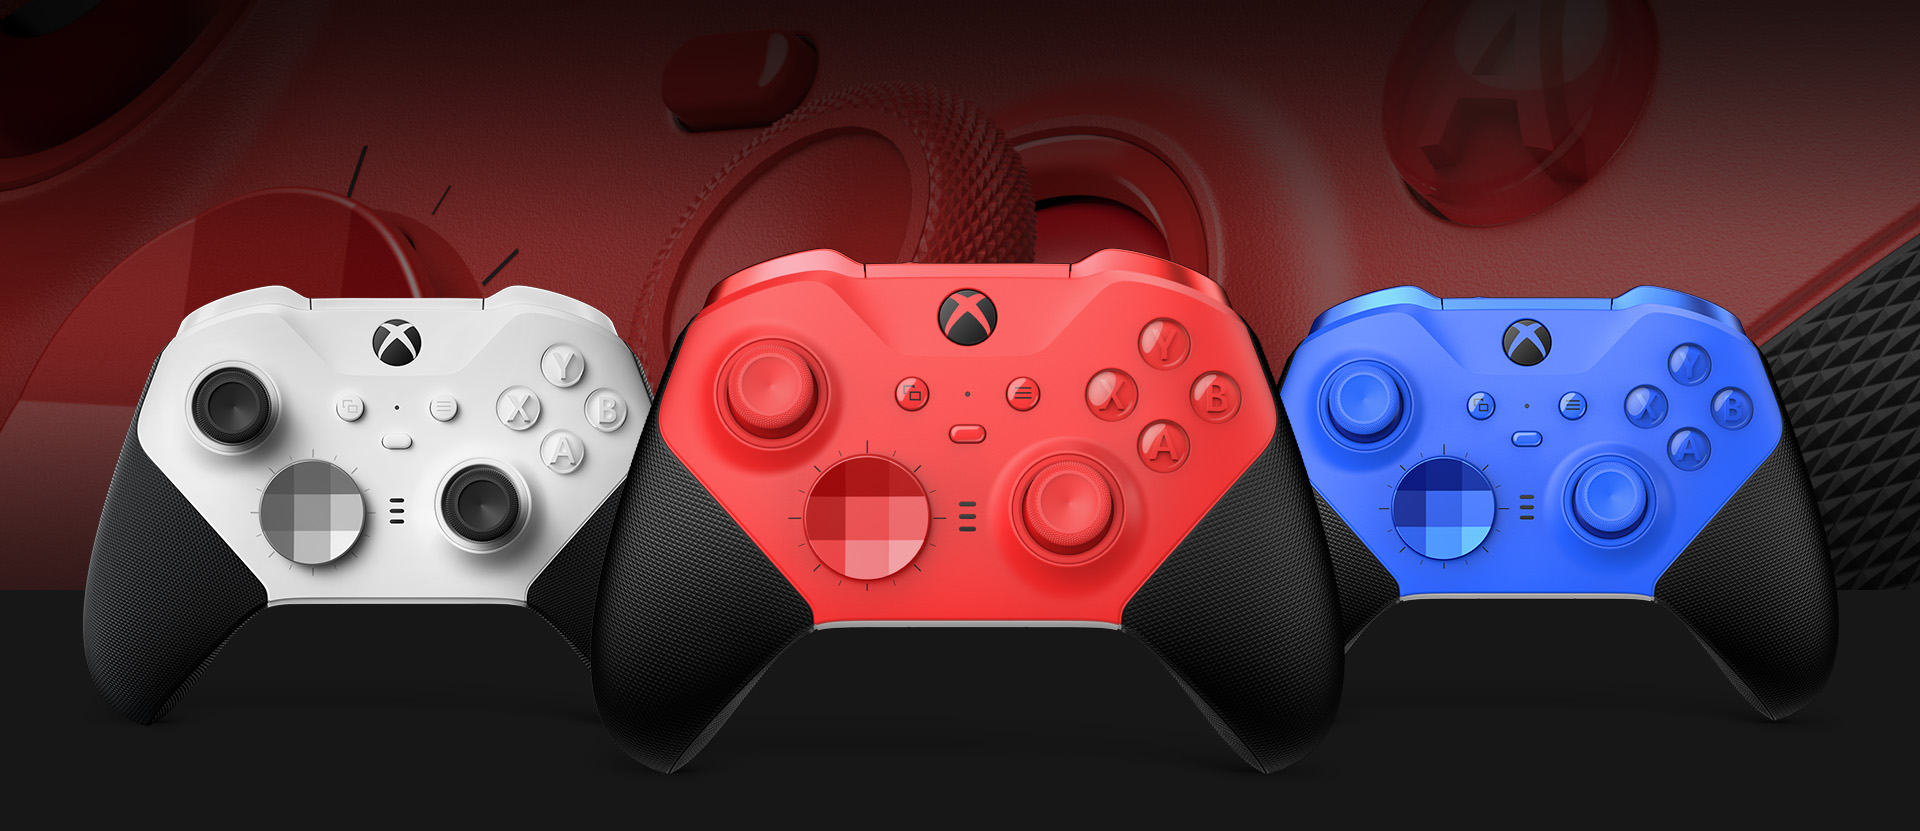 Az Xbox Elite Series 2 – Core (piros) vezeték nélküli kontroller elölnézete, mellette megjelenített egyéb színlehetőségekkel. A háttérben a kontroller karjainak és textúrázott markolatának közelképe figyelhető meg.